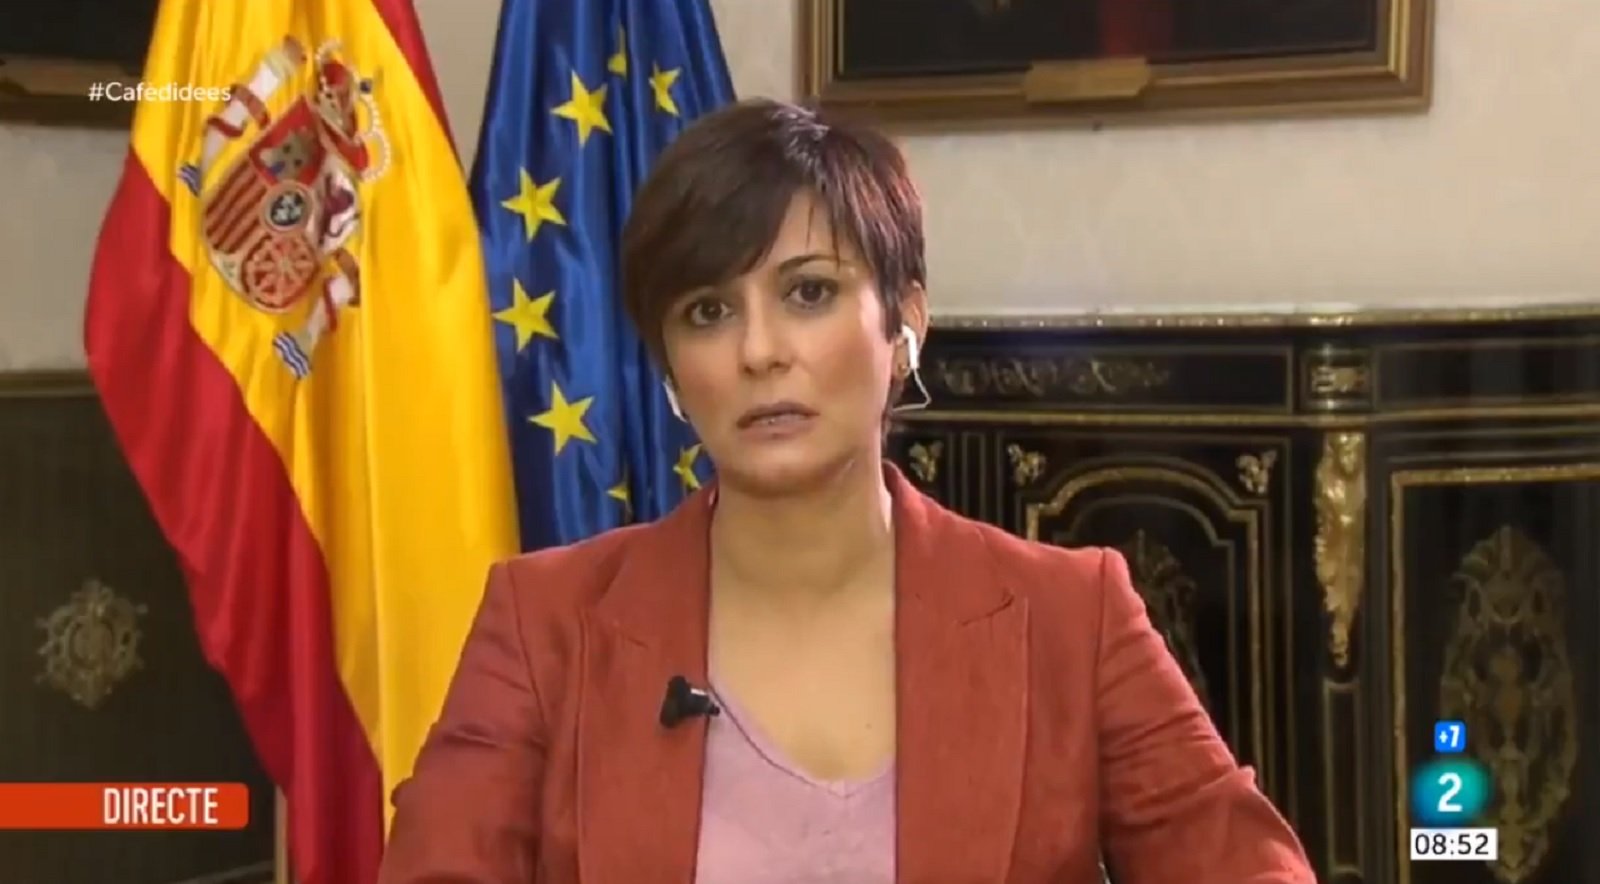 El govern Sánchez evita anomenar Puigdemont: "Aquest senyor no representa res"